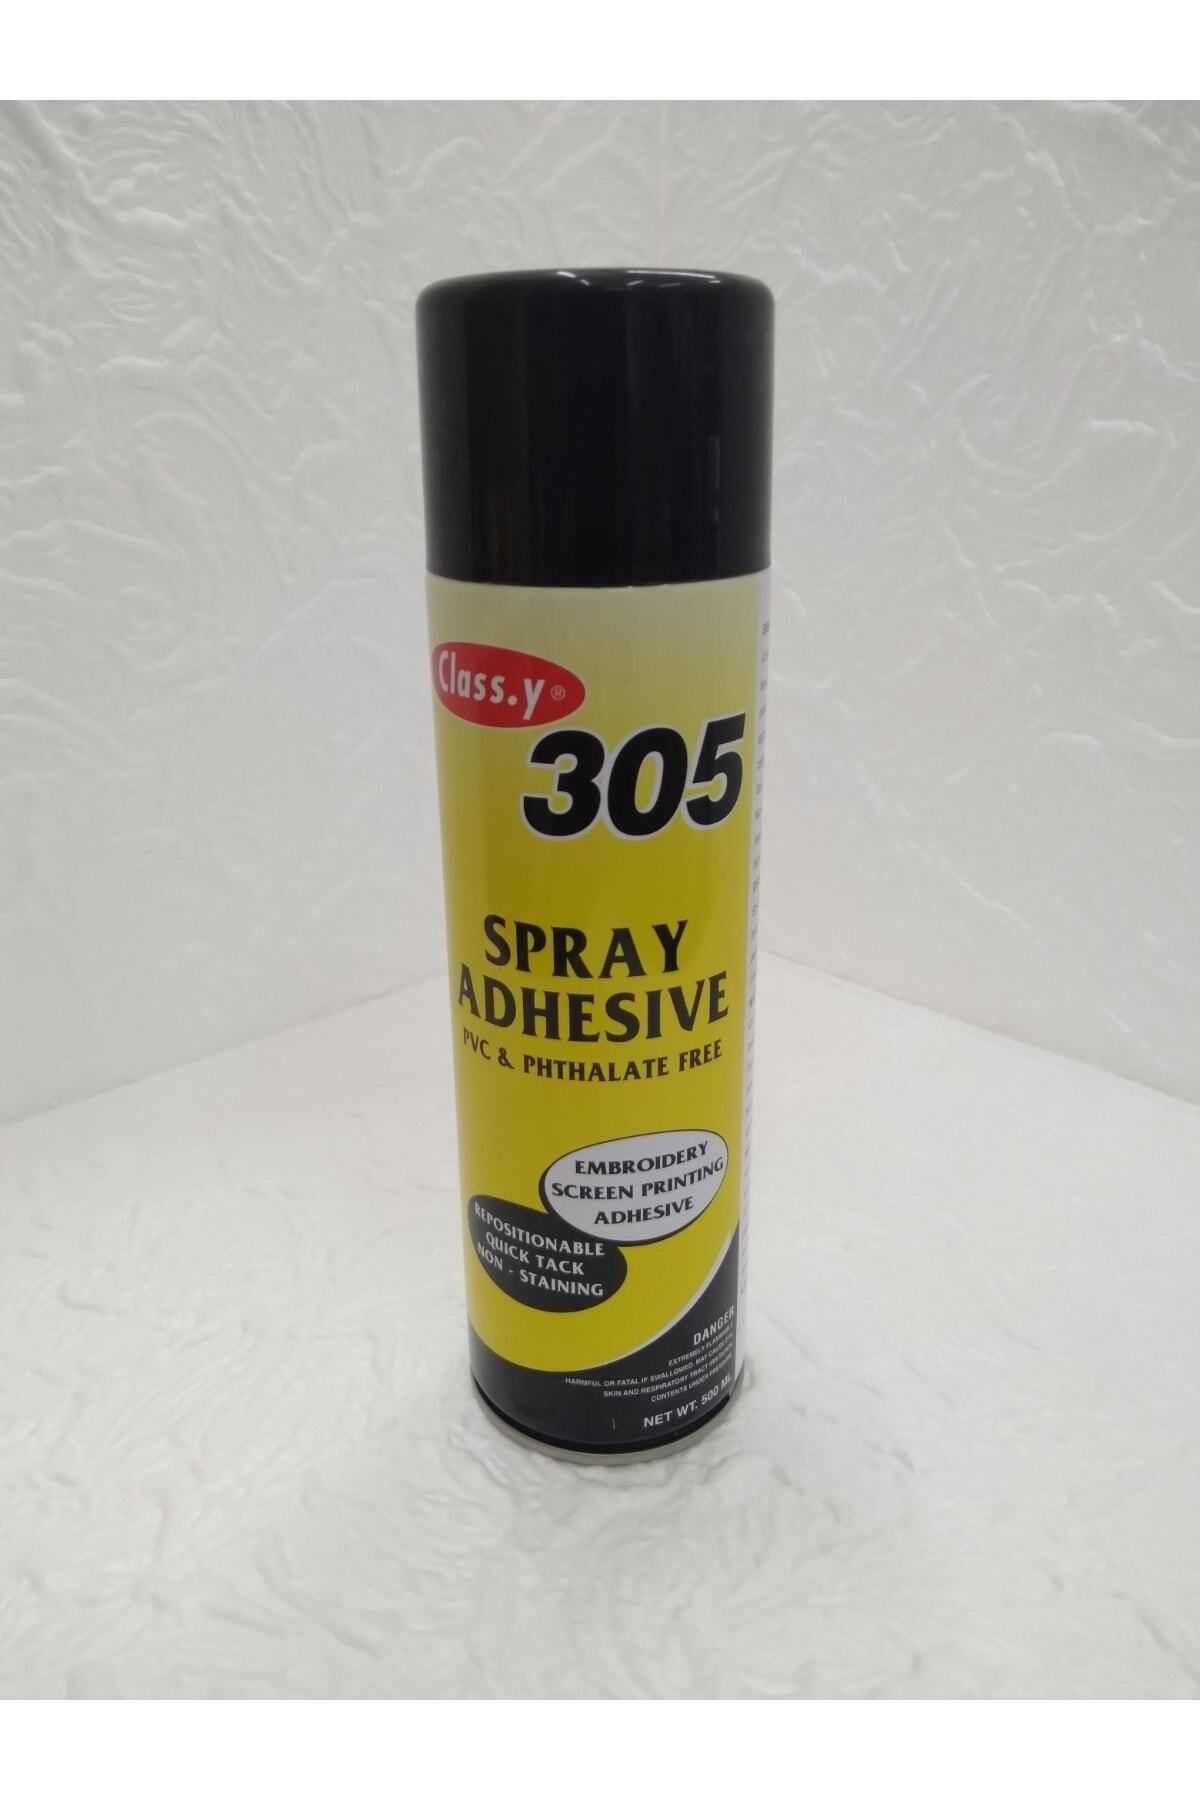 class.yy Class.y 305 Adhesive Spray Tekstil Yapıştırıcı (500ml)